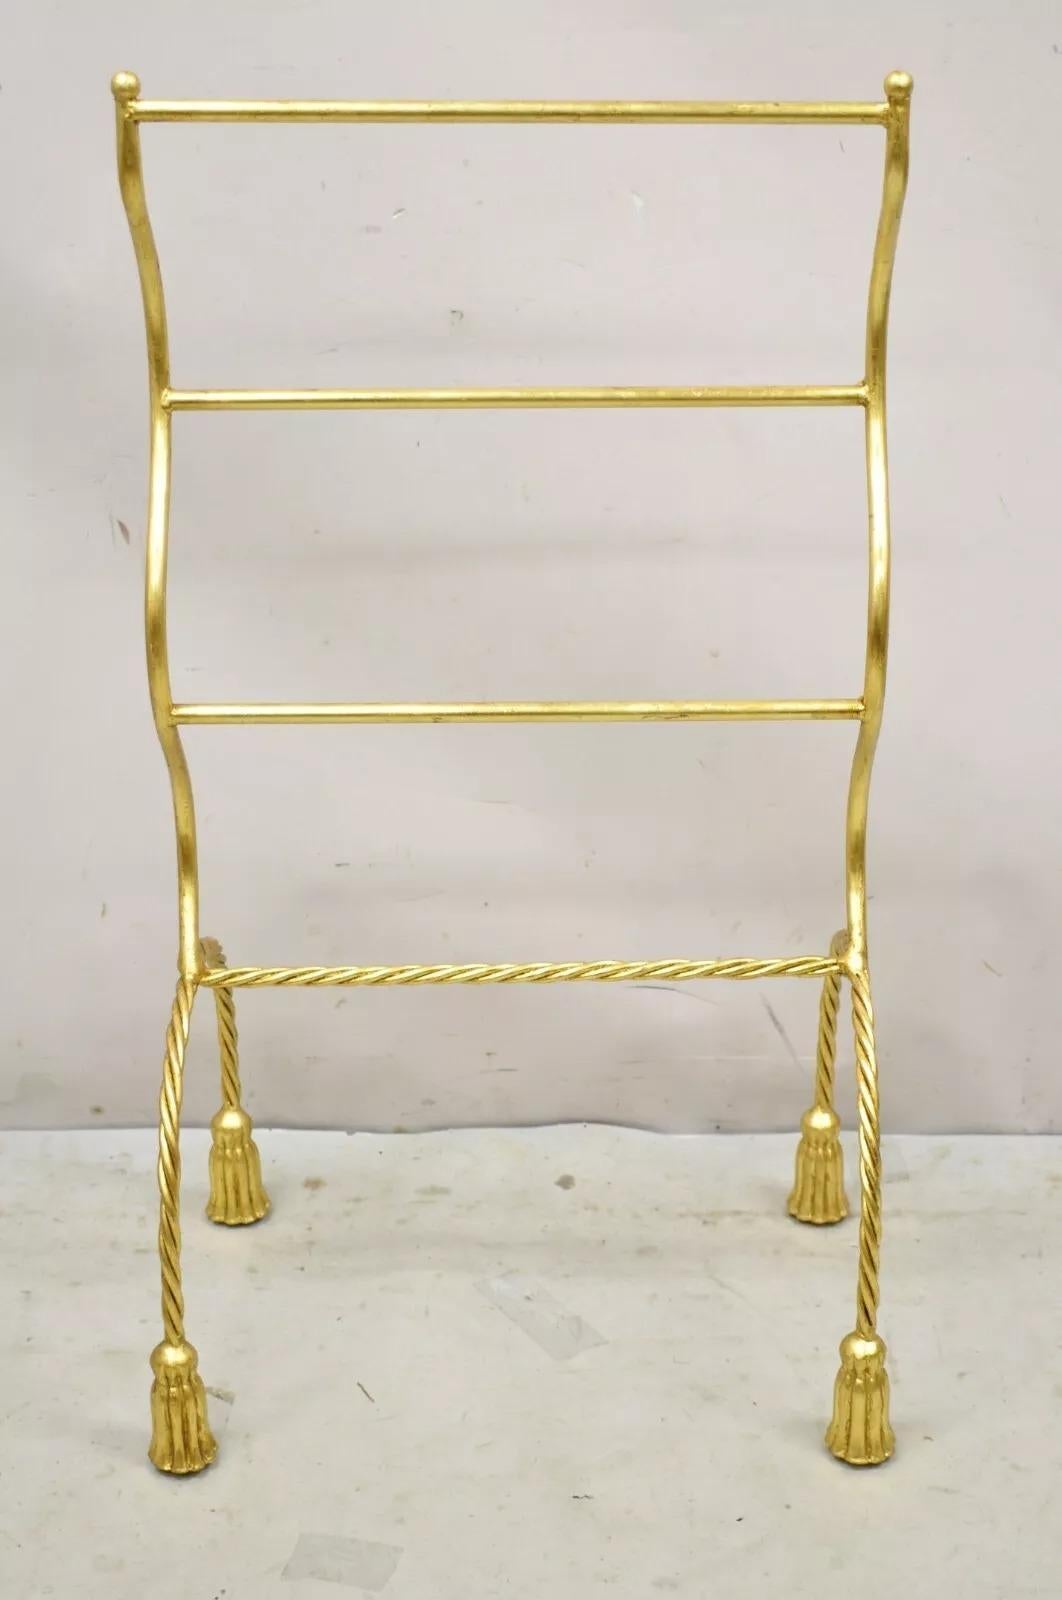 Vintage Italian Hollywood Regency Gold vergoldet Metall Eisen Handtuchhalter mit Quaste Füße. Der Artikel zeichnet sich durch eine vergoldete Oberfläche, einen skulpturalen Metallrahmen, Füße in Quastenform, hochwertige italienische Handwerkskunst,